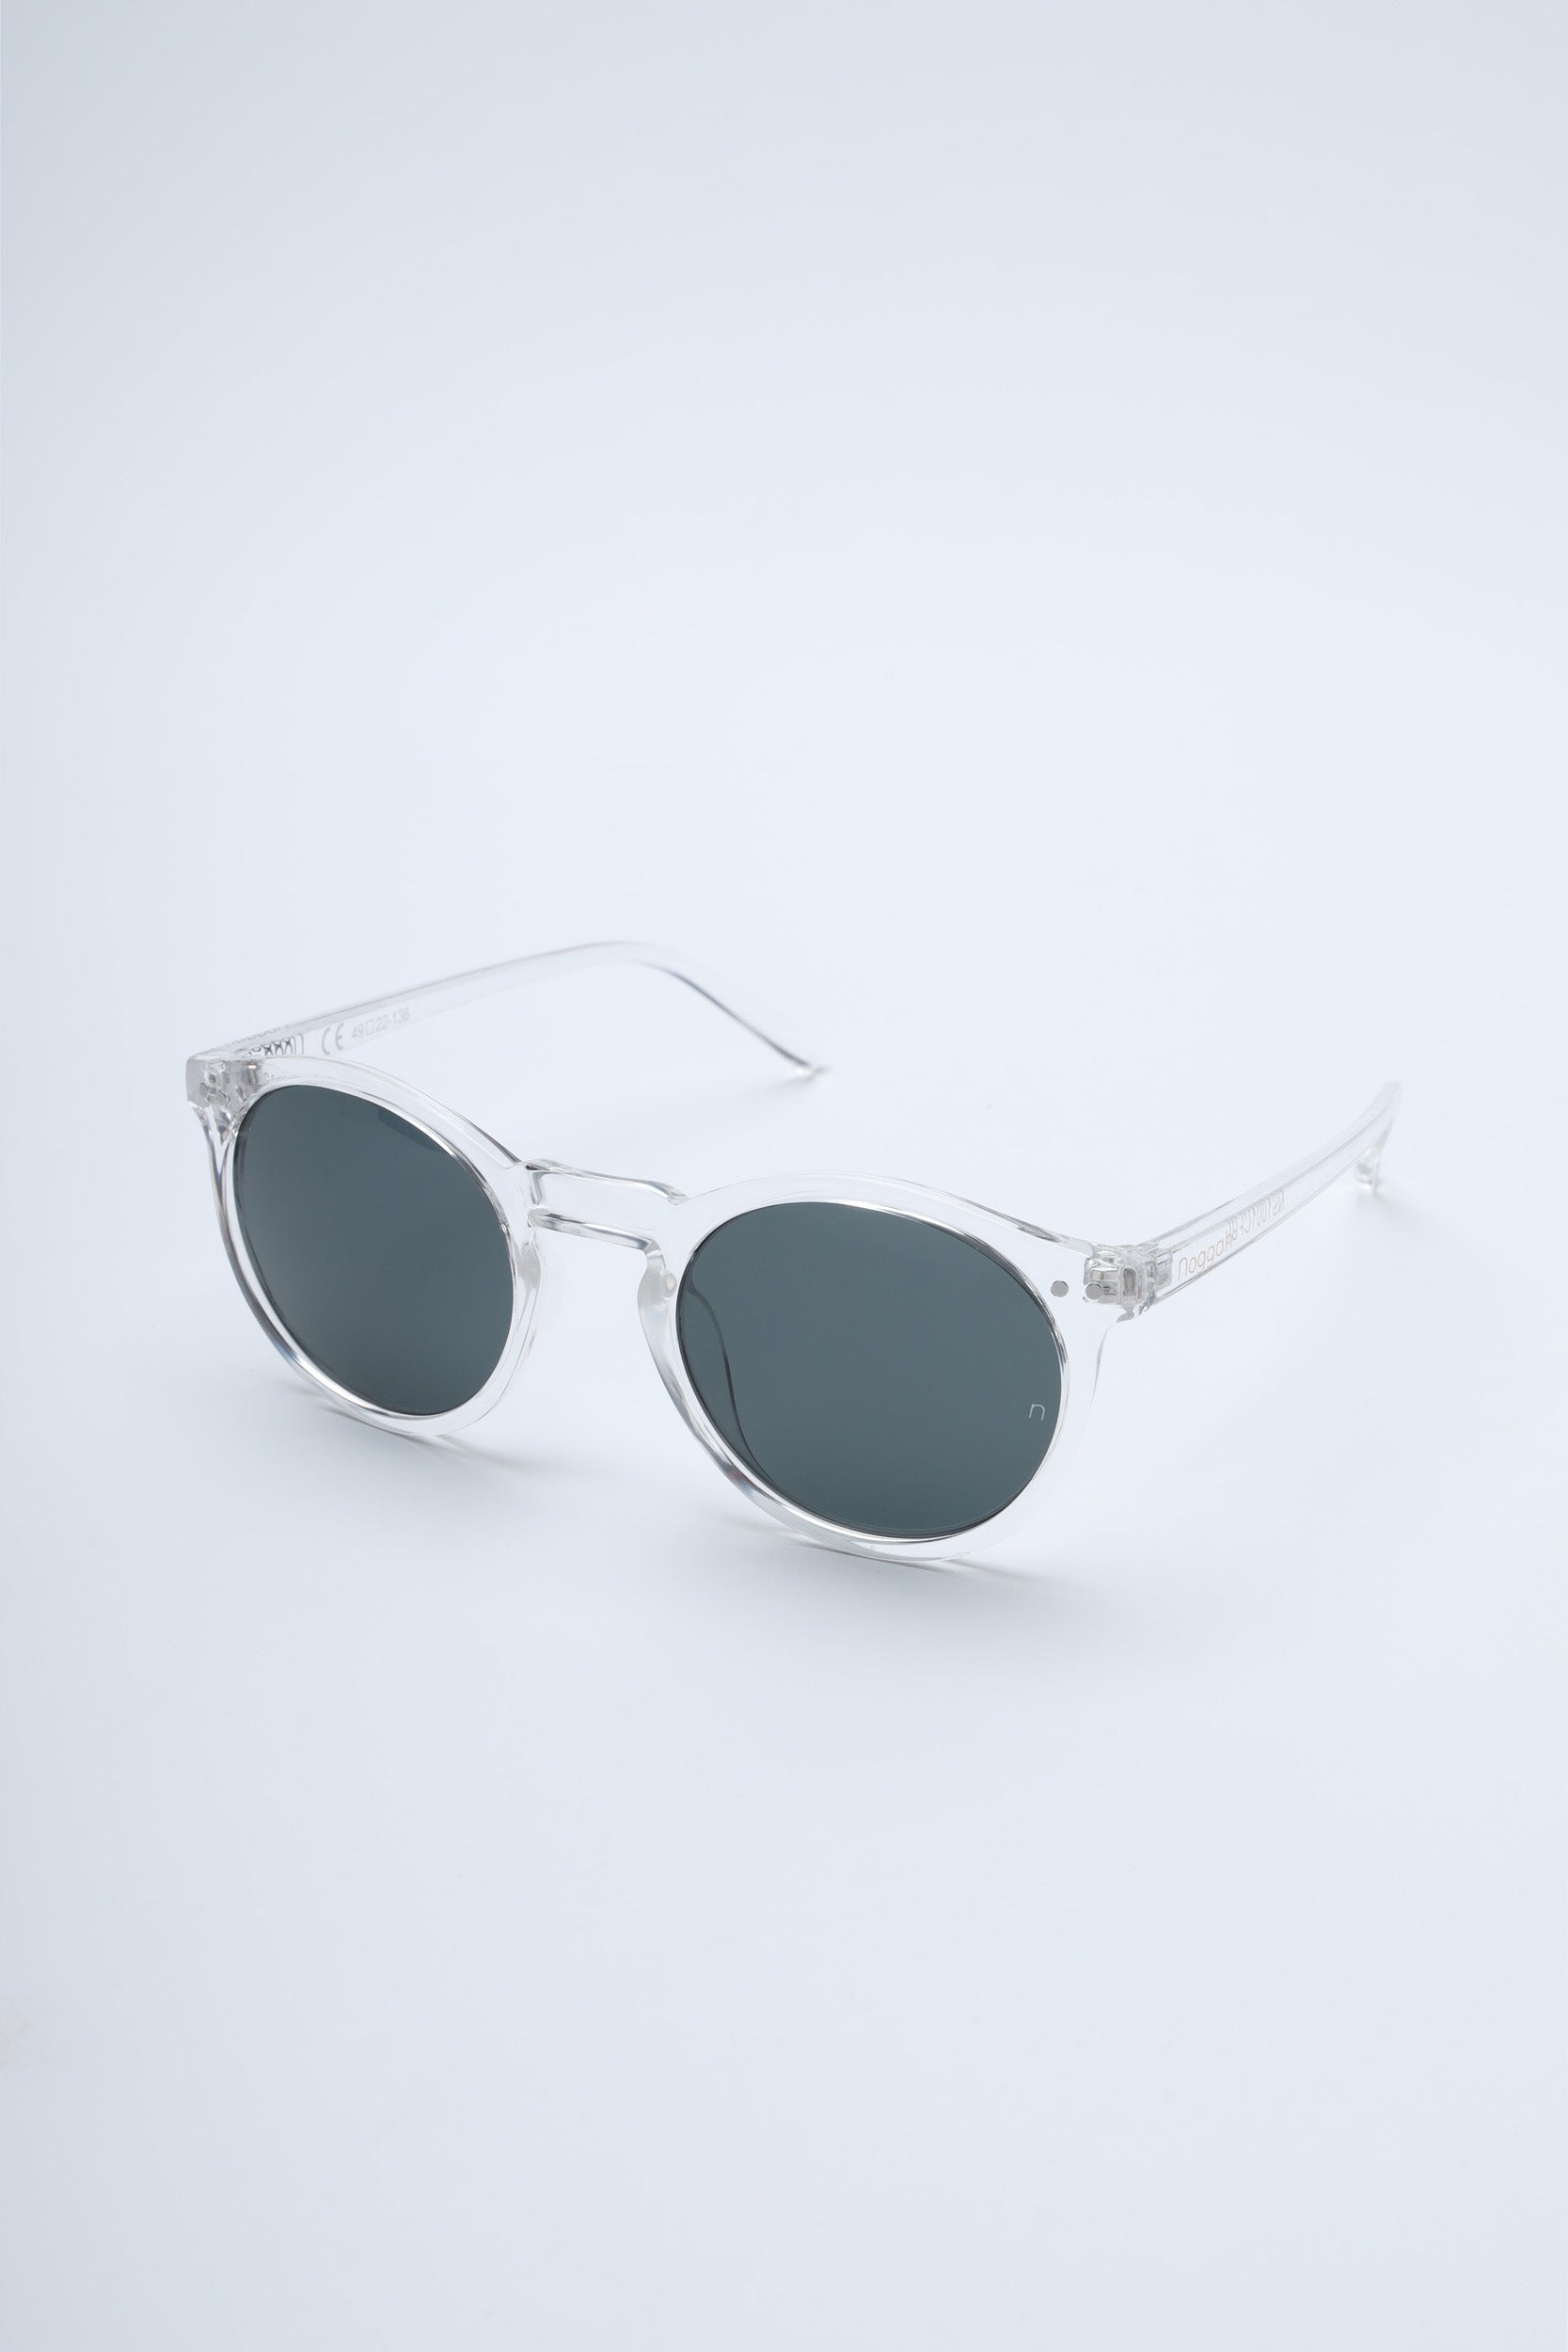 LV Ash Sunglasses Luxury S00 LOUIS VUITTON